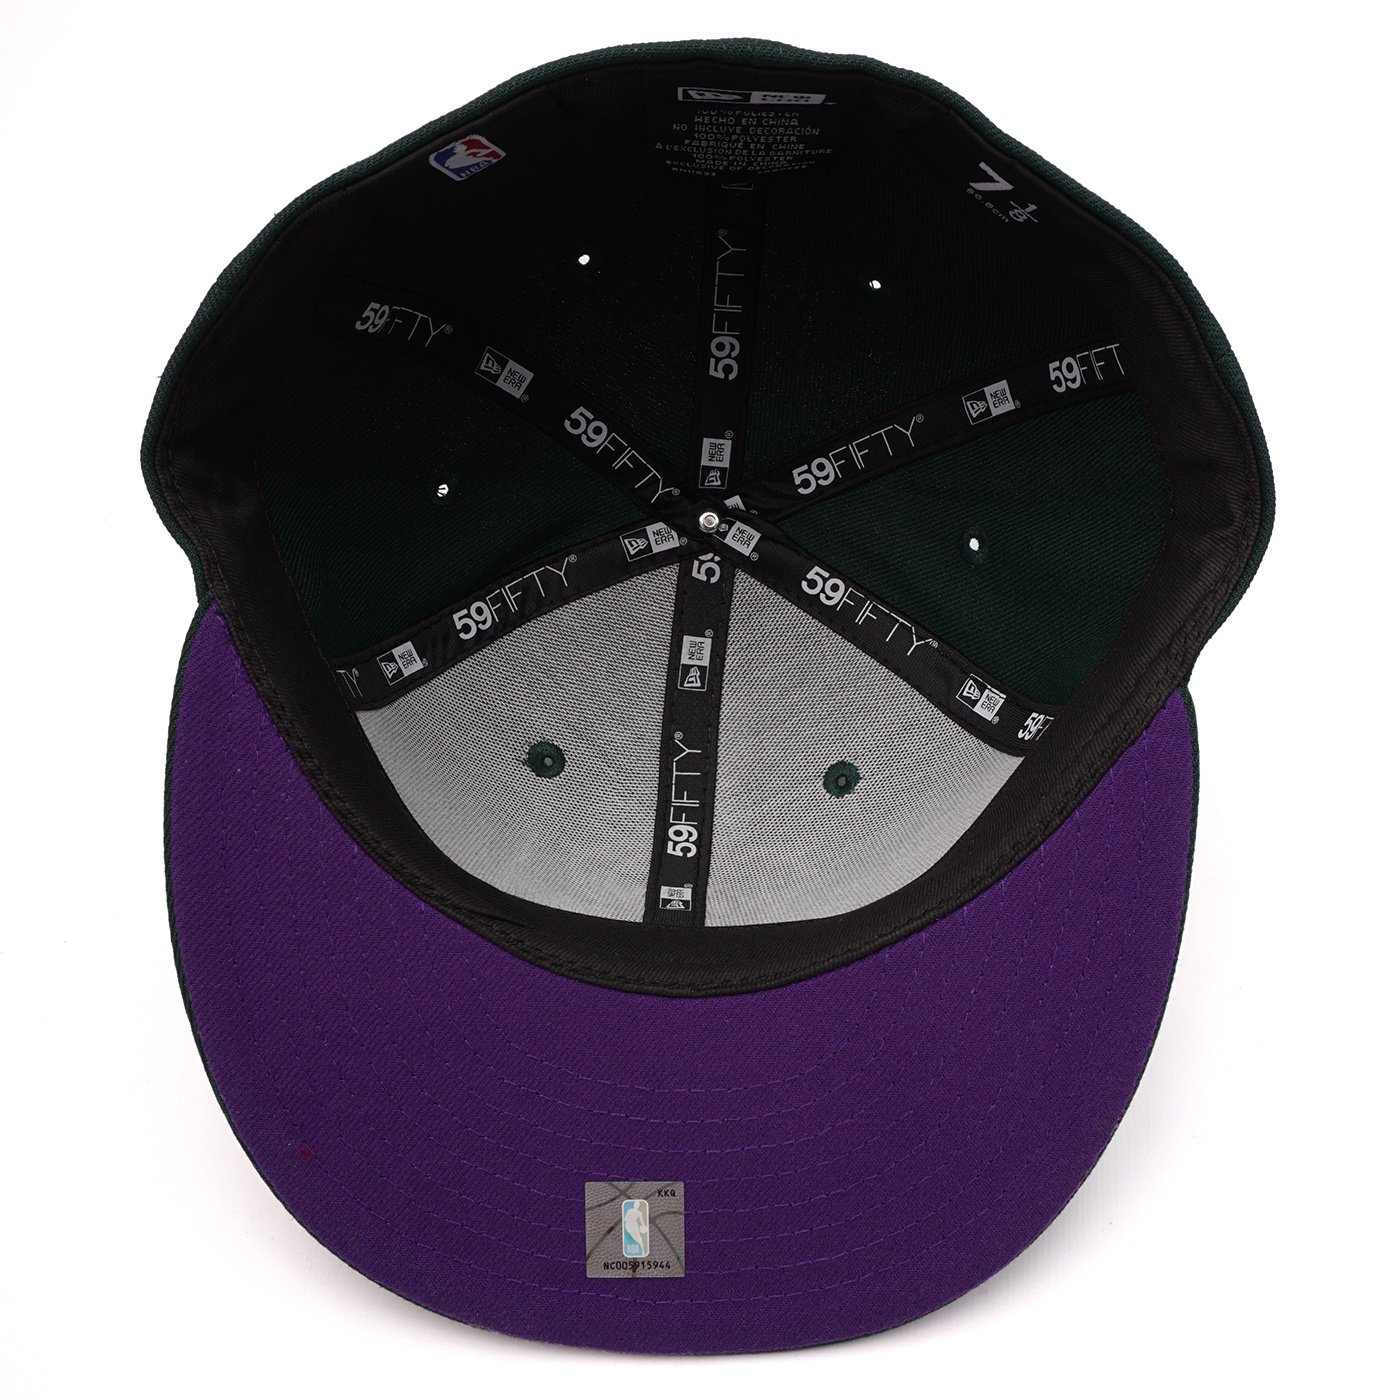 New Era Men's Bucks Script 59FIFTY Fitted Hat Green/Purple Size 7 5/8 | MODA3